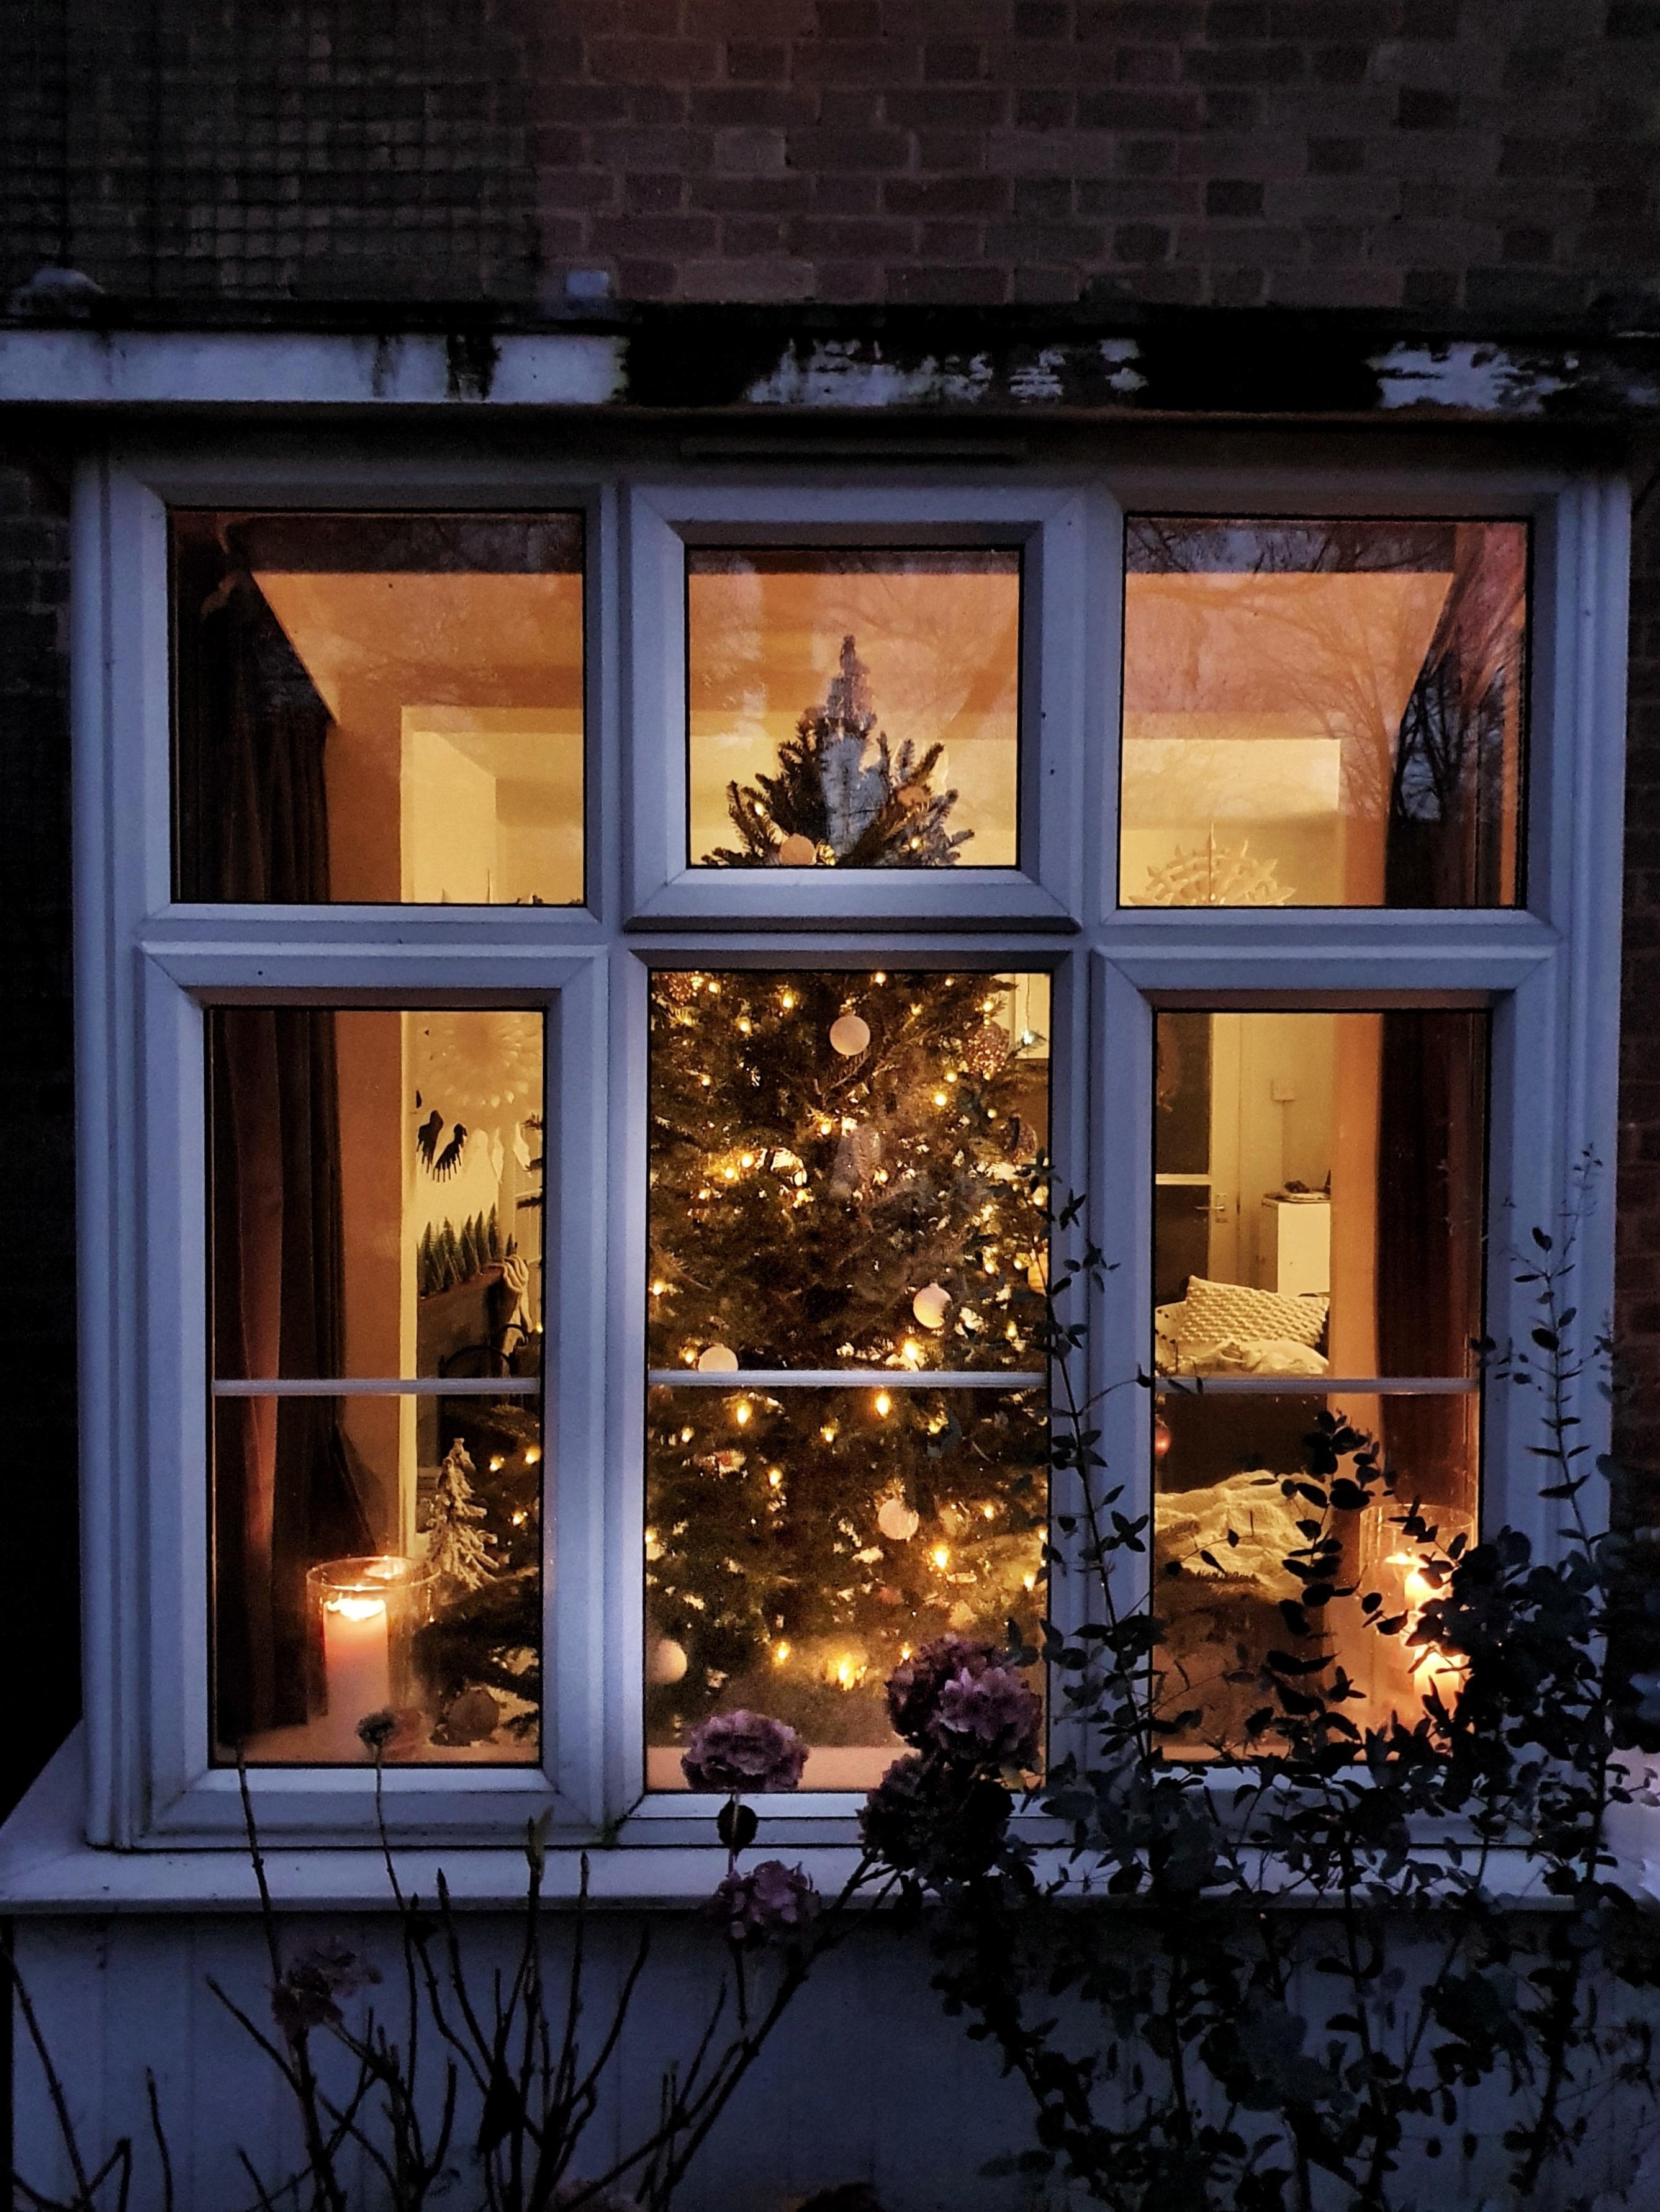 #christmas #wohnzimmer #altbau #weihnachten #advent #hygge #couchliebt 